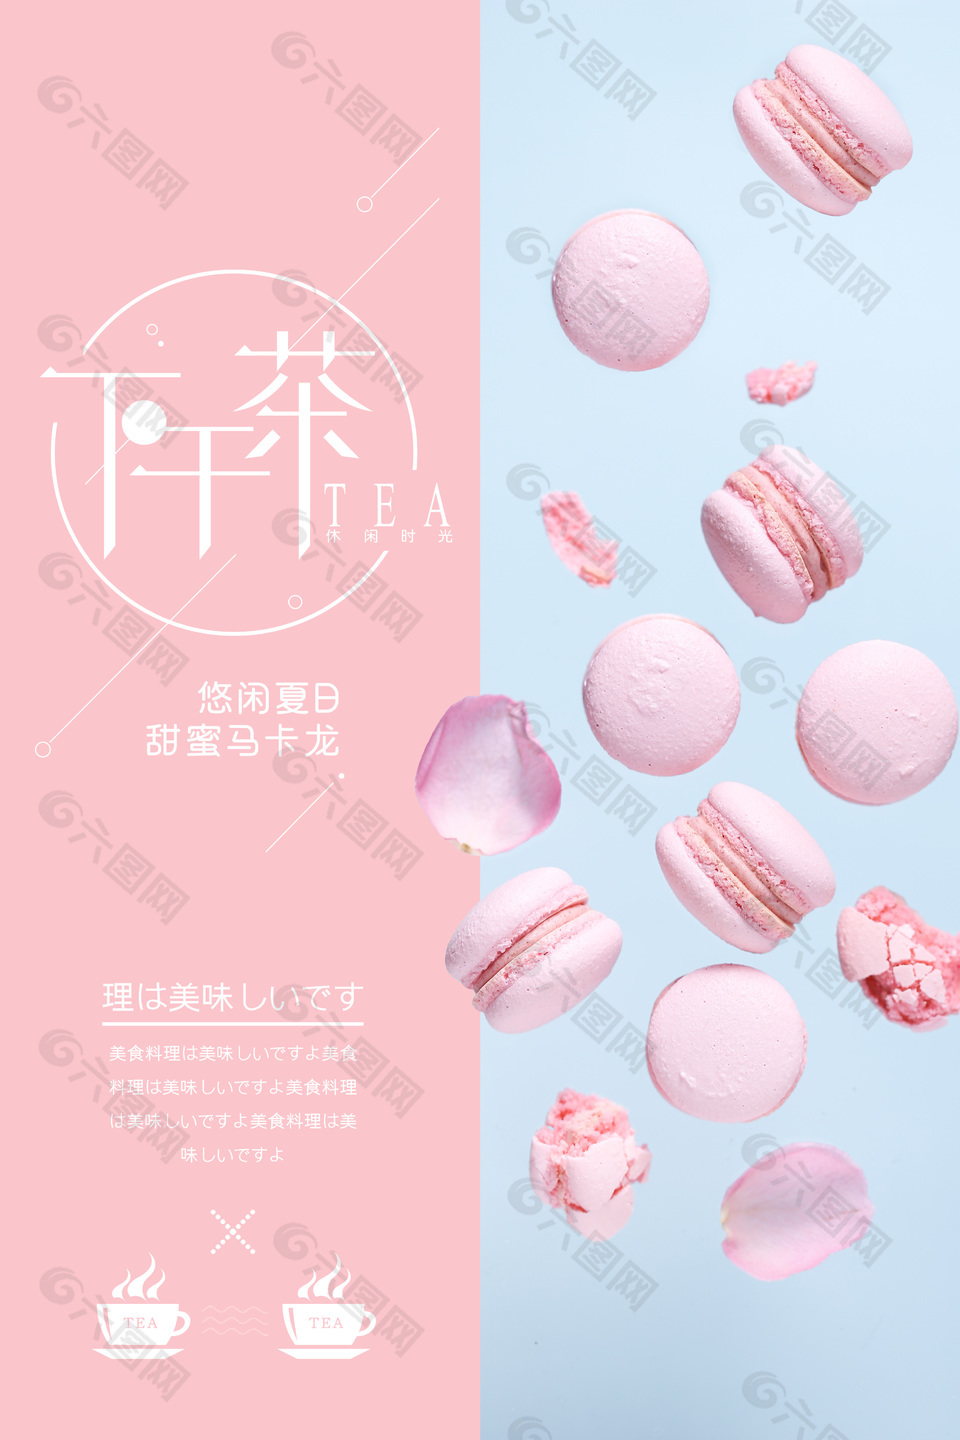 粉色主题系列甜蜜马卡龙创意海报设计